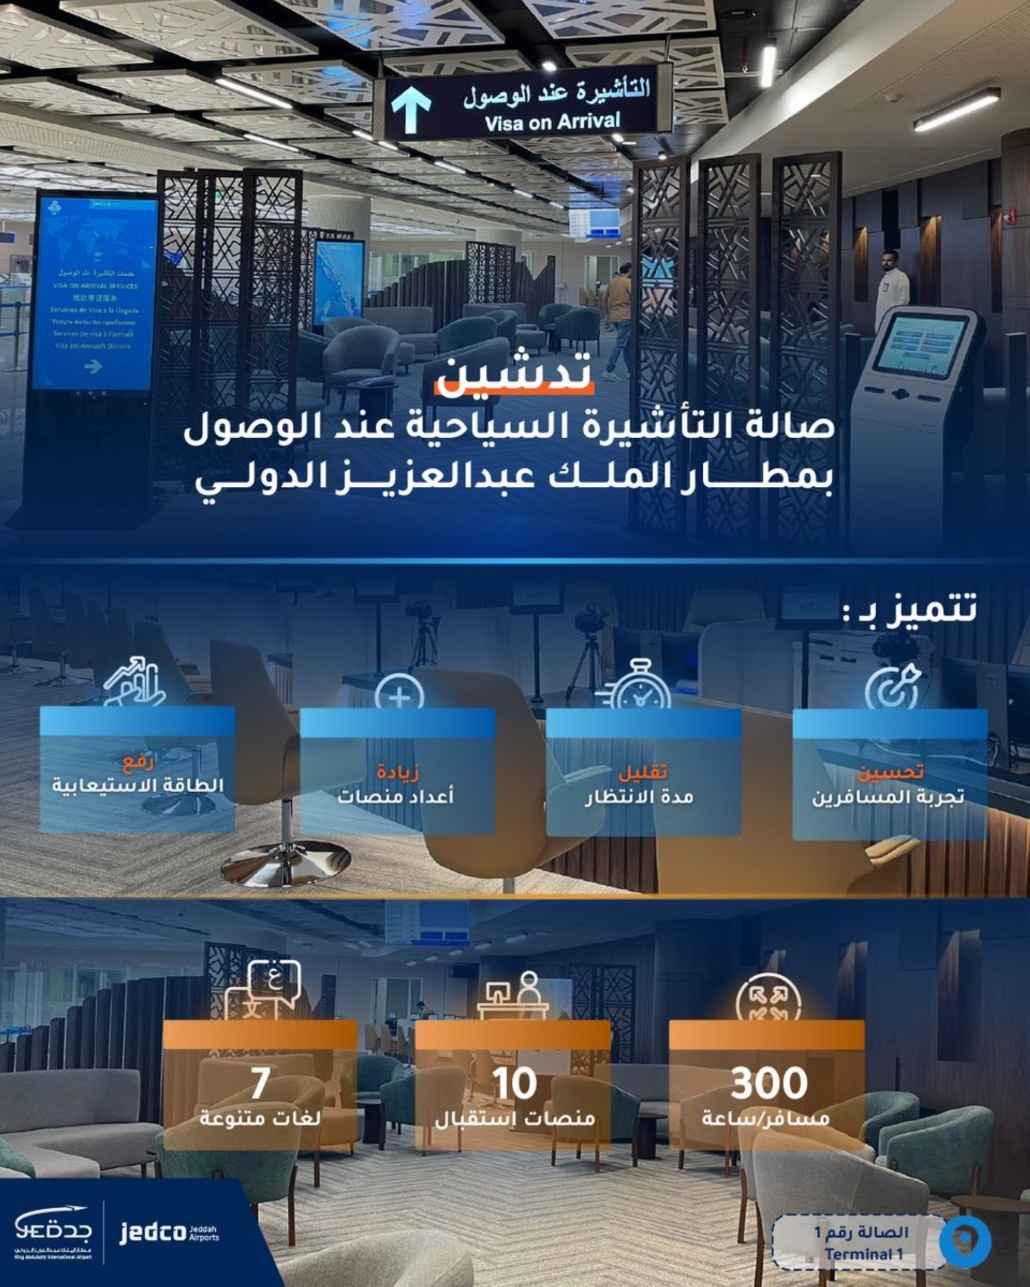 الخدمات المقدمة في صالة التأشيرات السياحية بمطار الملك عبدالعزيز